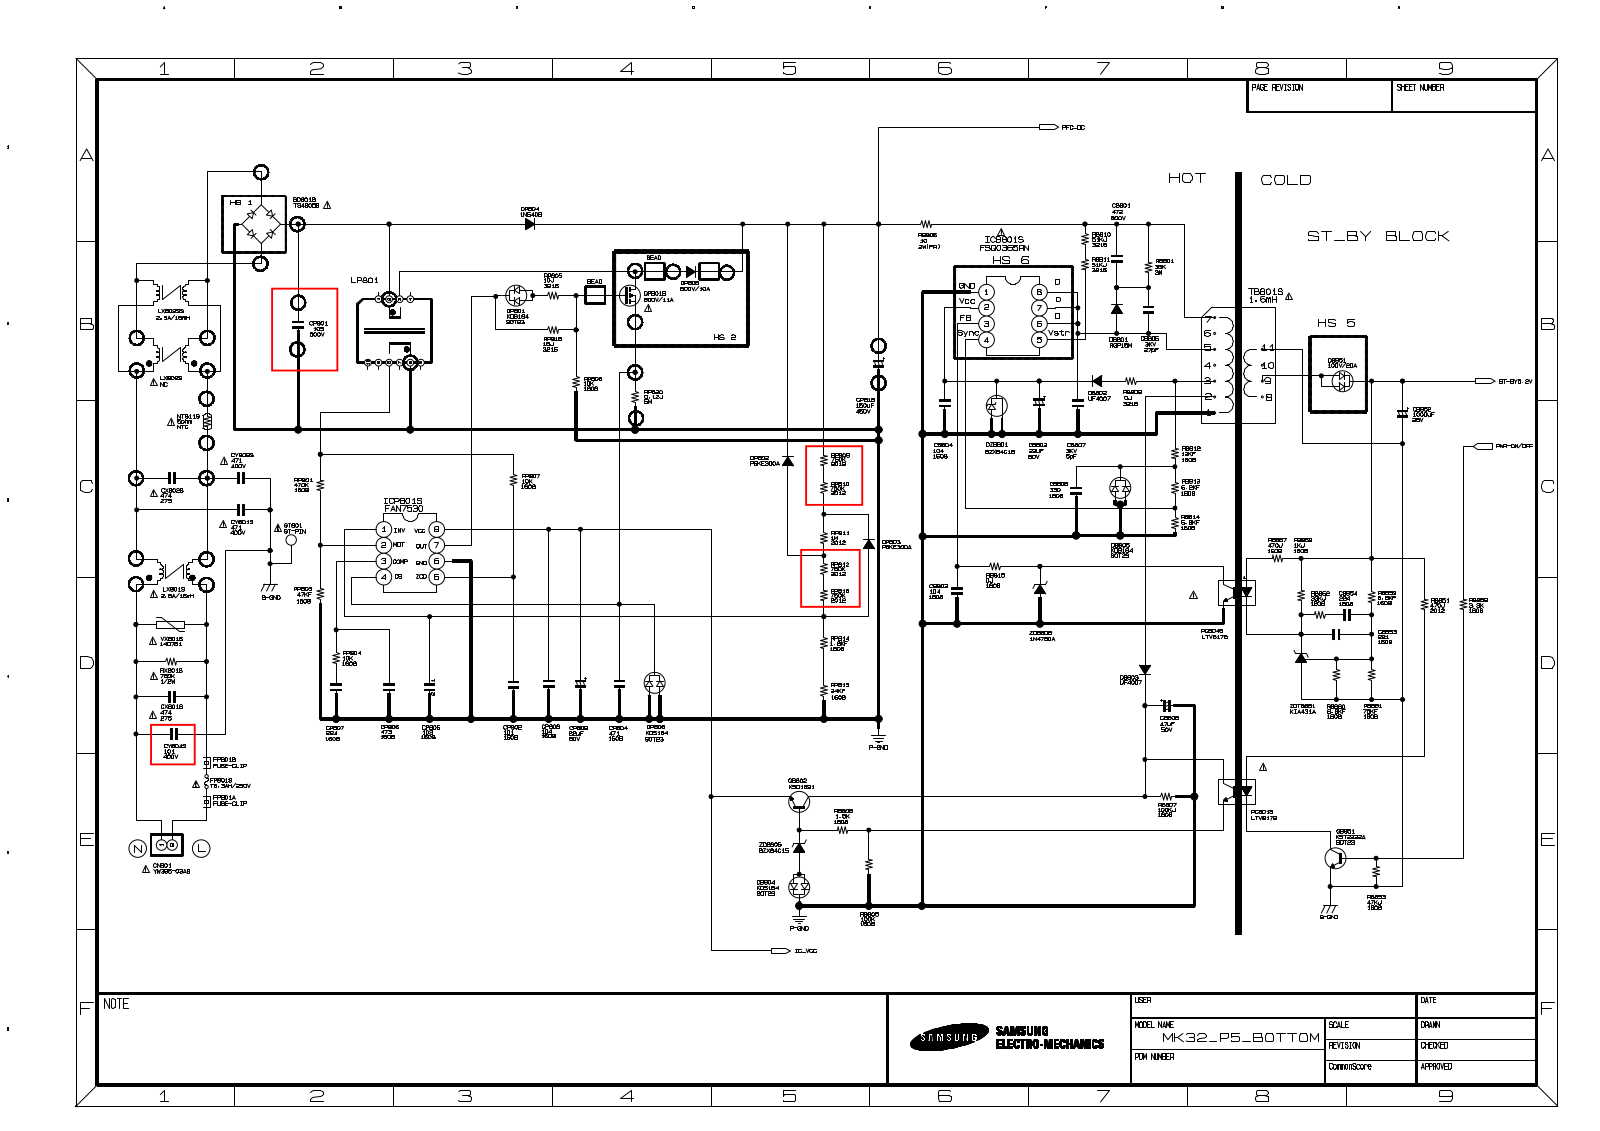 SAMSUNG BN44-00209A schematic